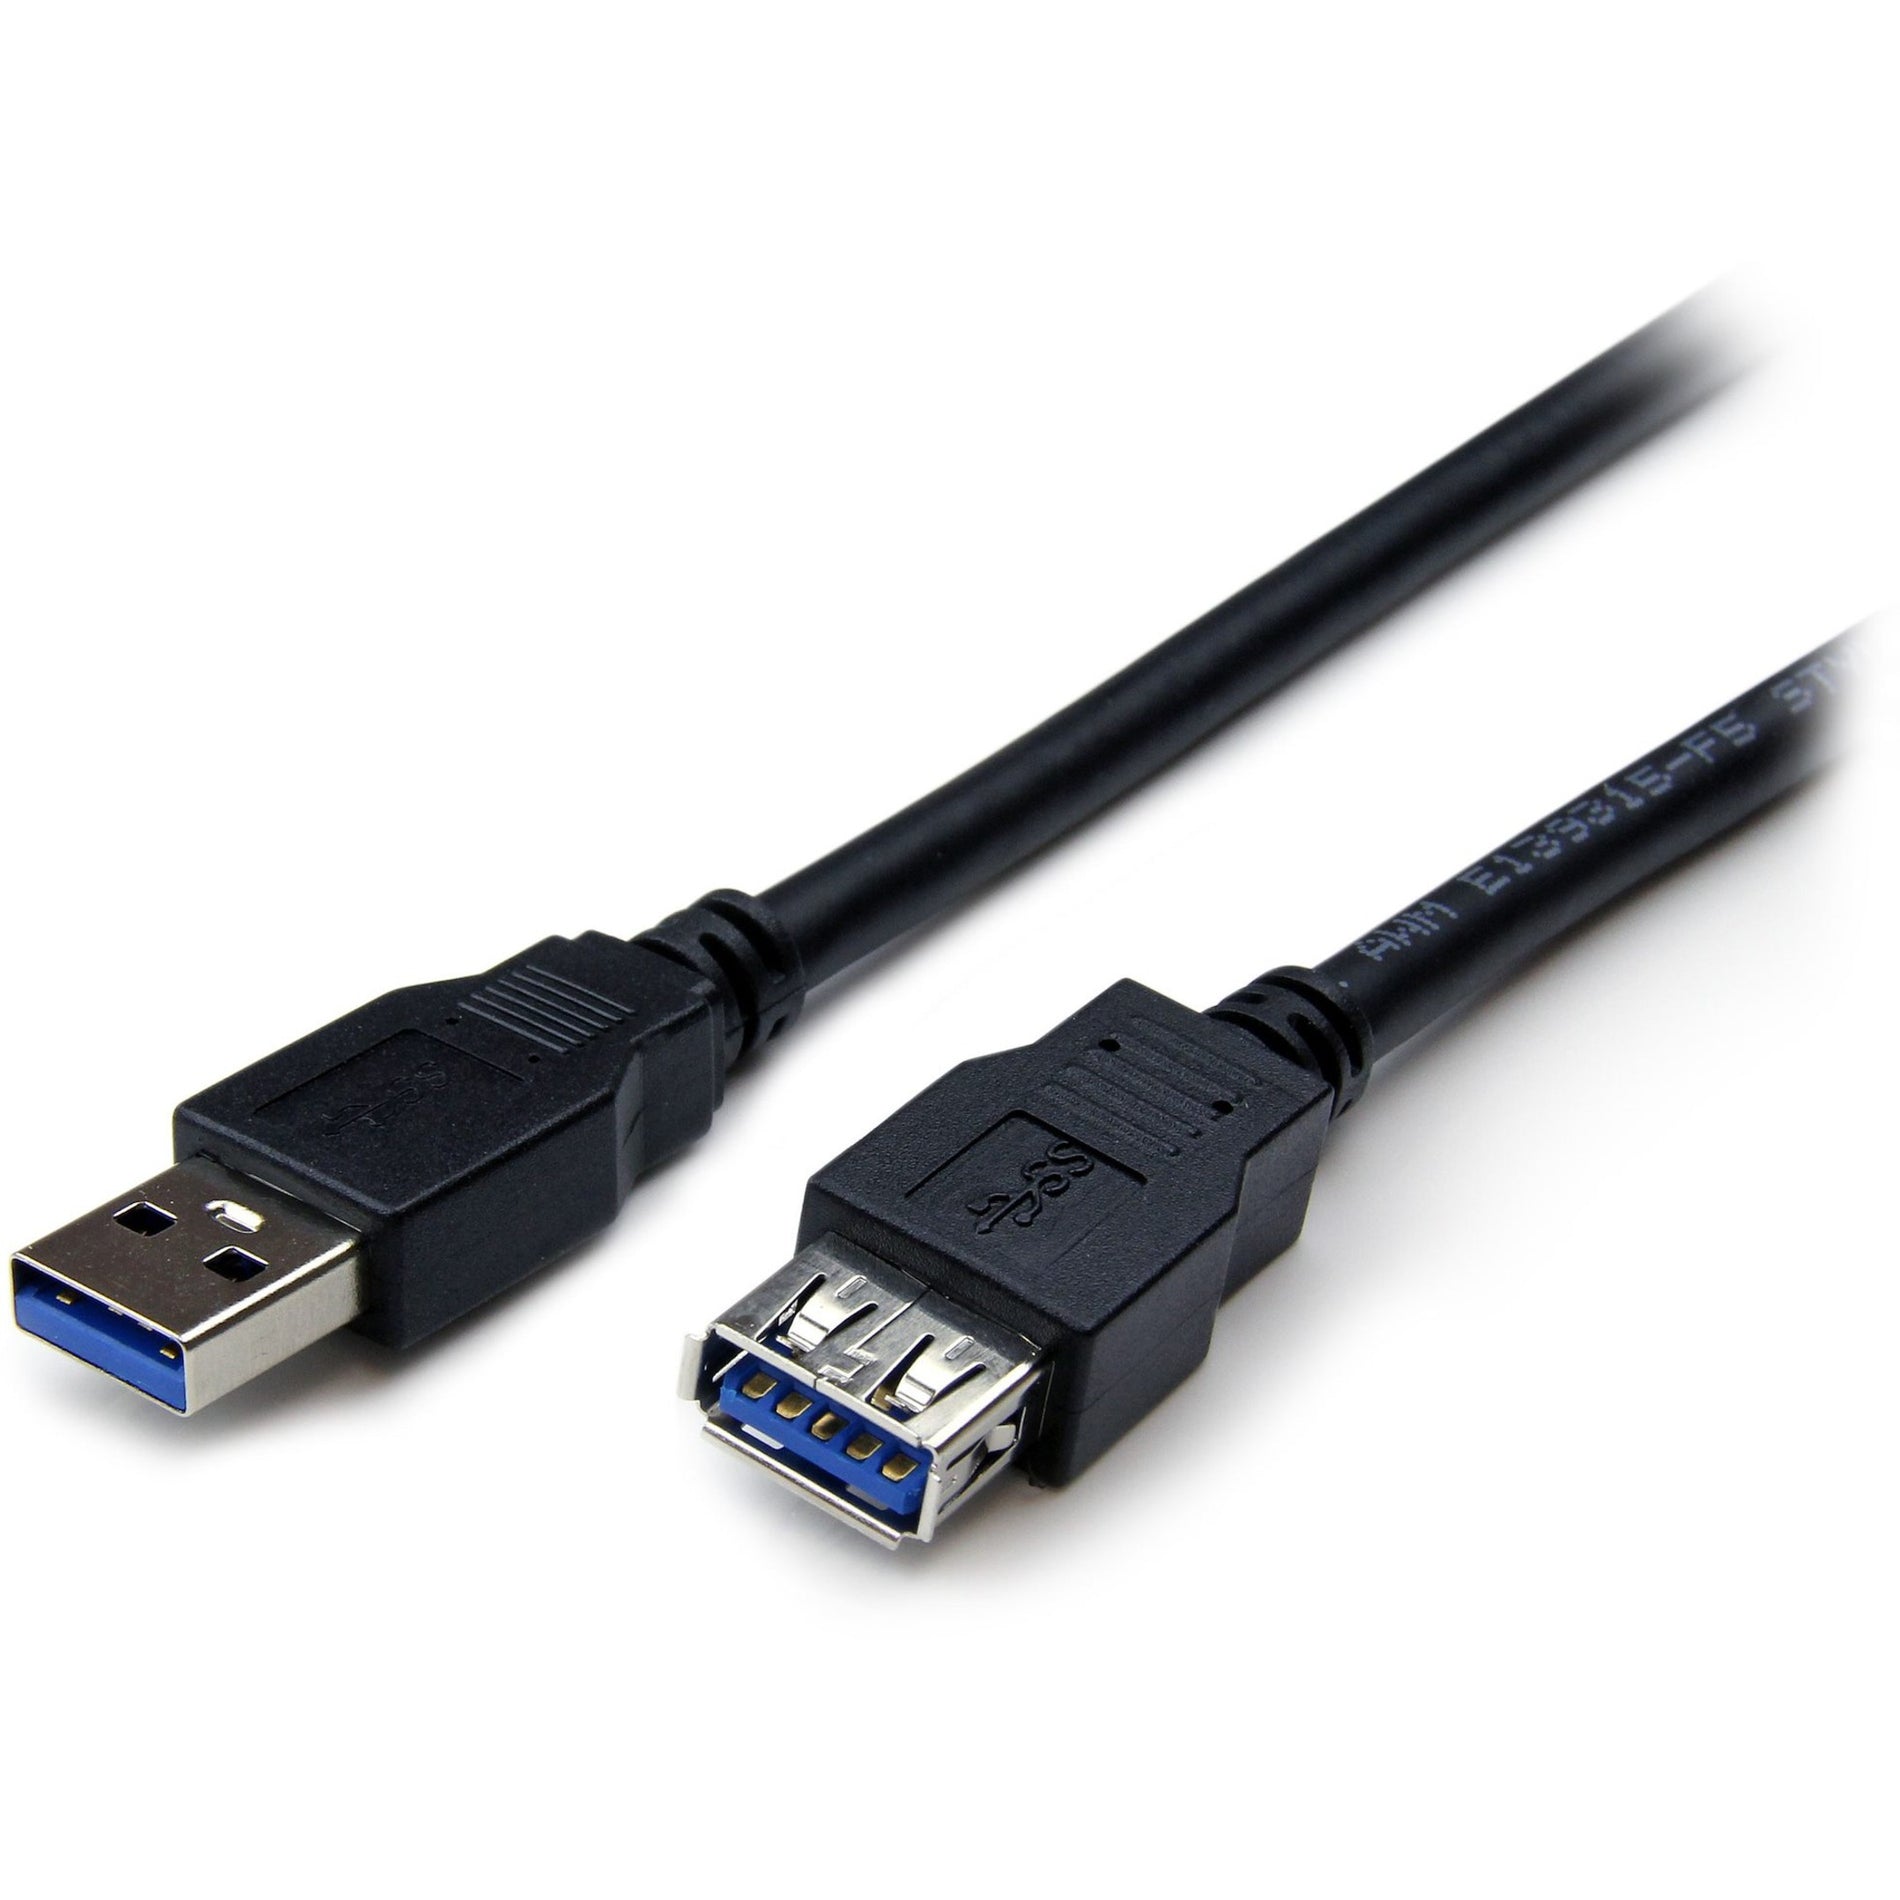 品牌名：StarTech.com 6 英尺 黑色 超高速 USB 3.0 延长线 A to A - M/F，高速数据传输，终身保修